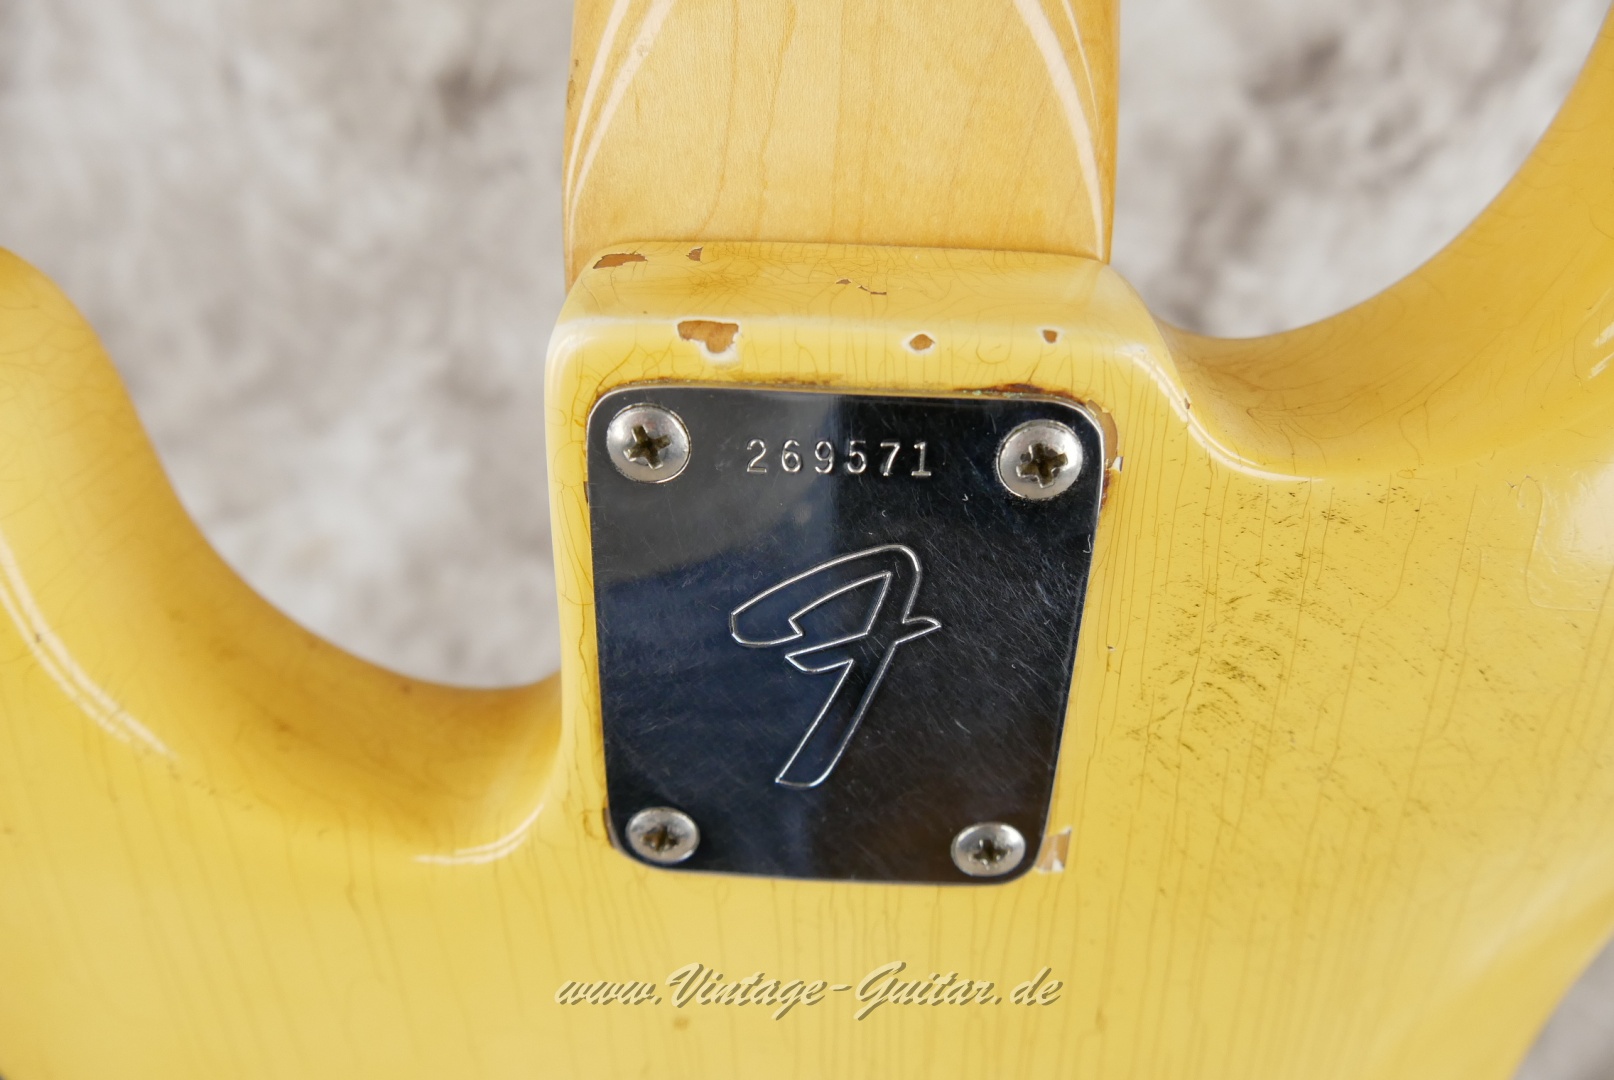 Fender-Precision-Bass-1969-olympic-white-001013.JPG